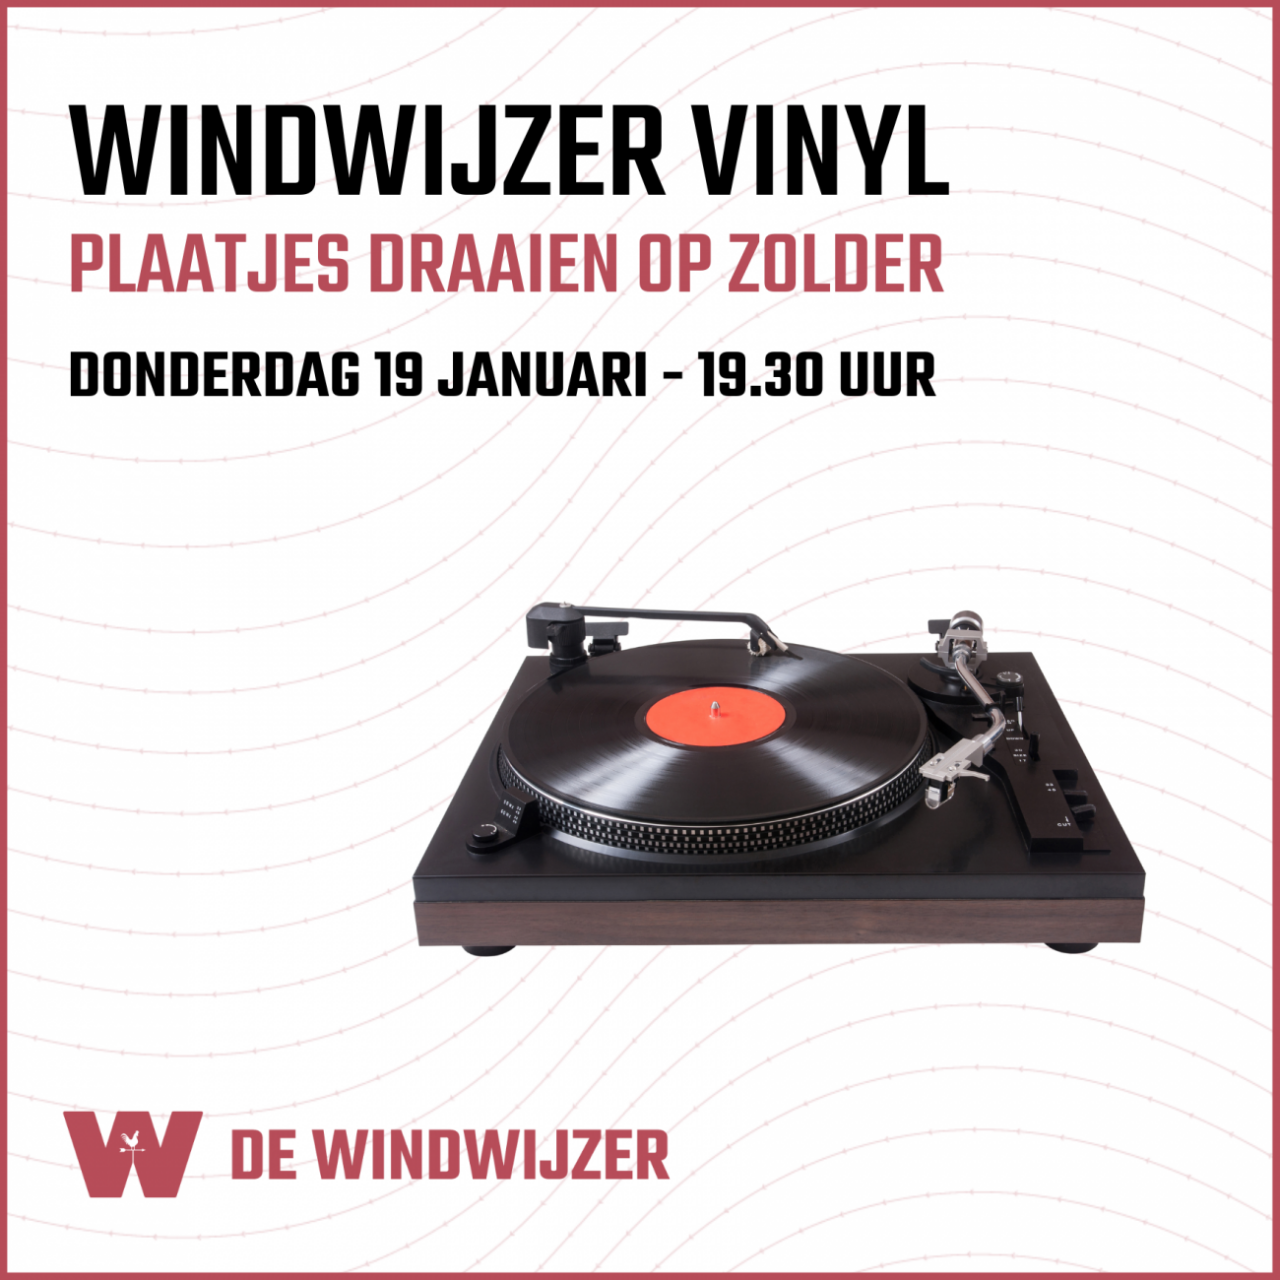 Windwijzer Vinyl – Lekker op zolder plaatjes draaien